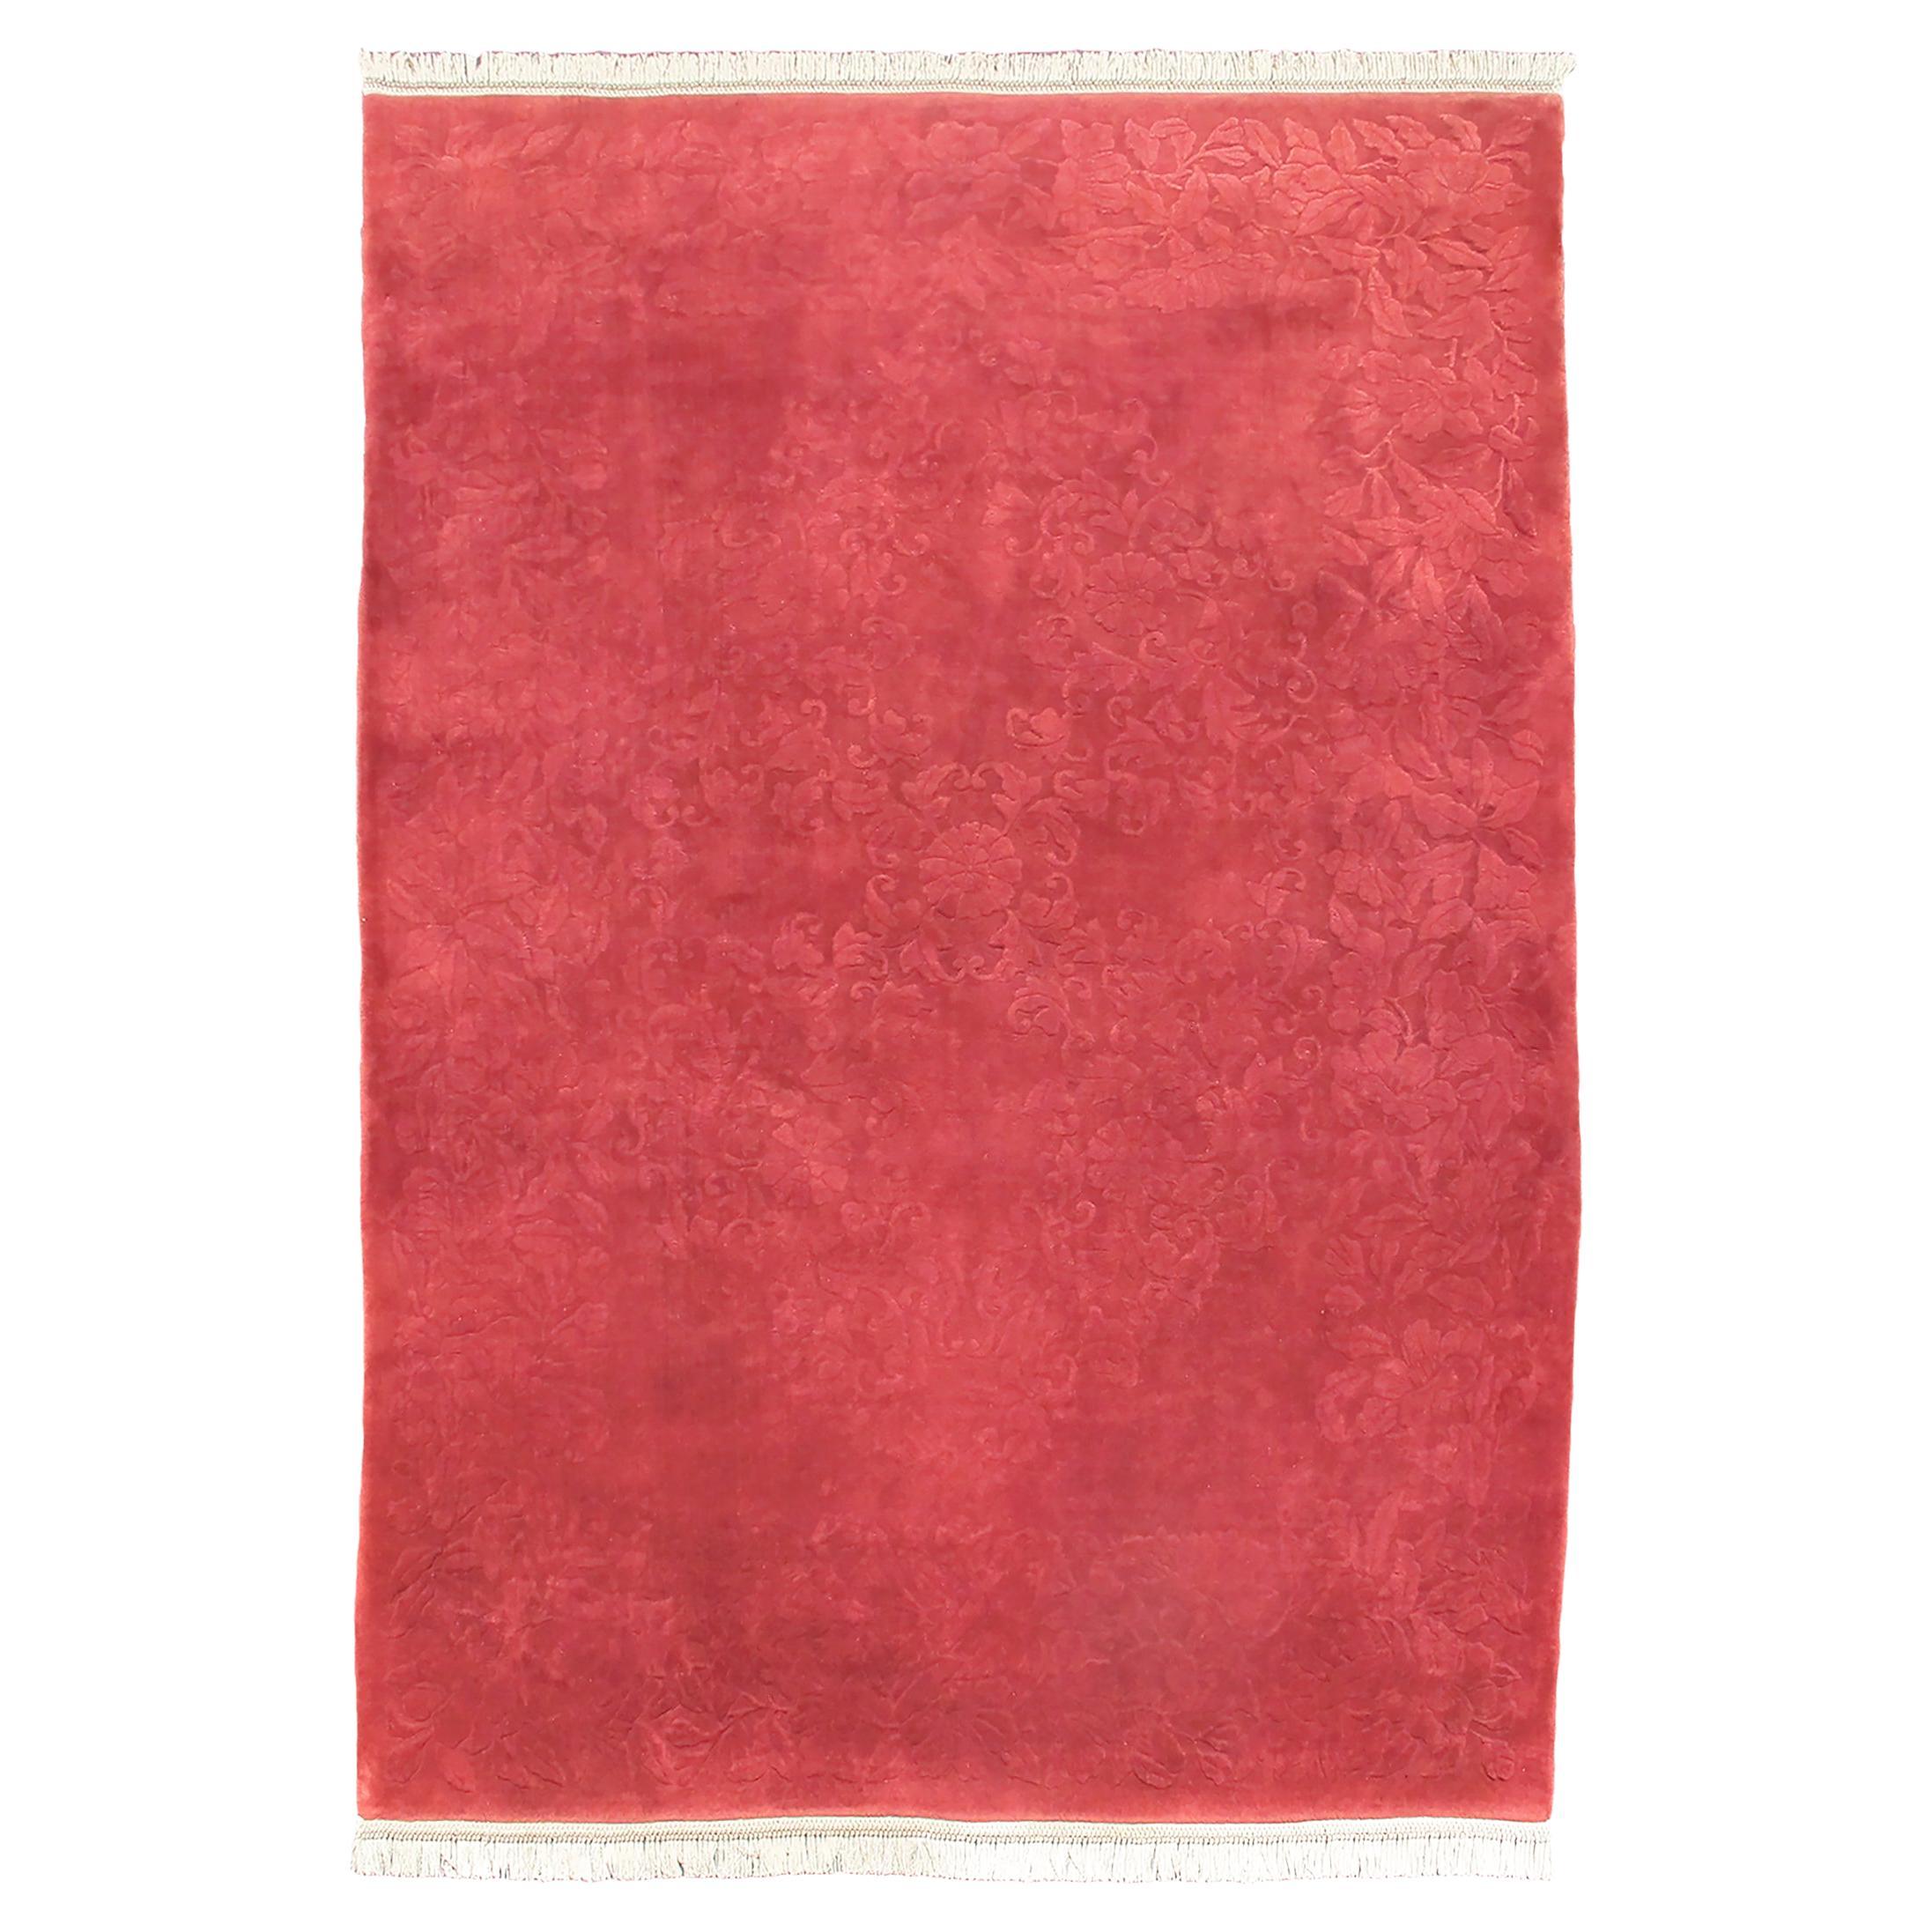 Semi-Antique Red Nichols Chinese Carpet, c. 1940